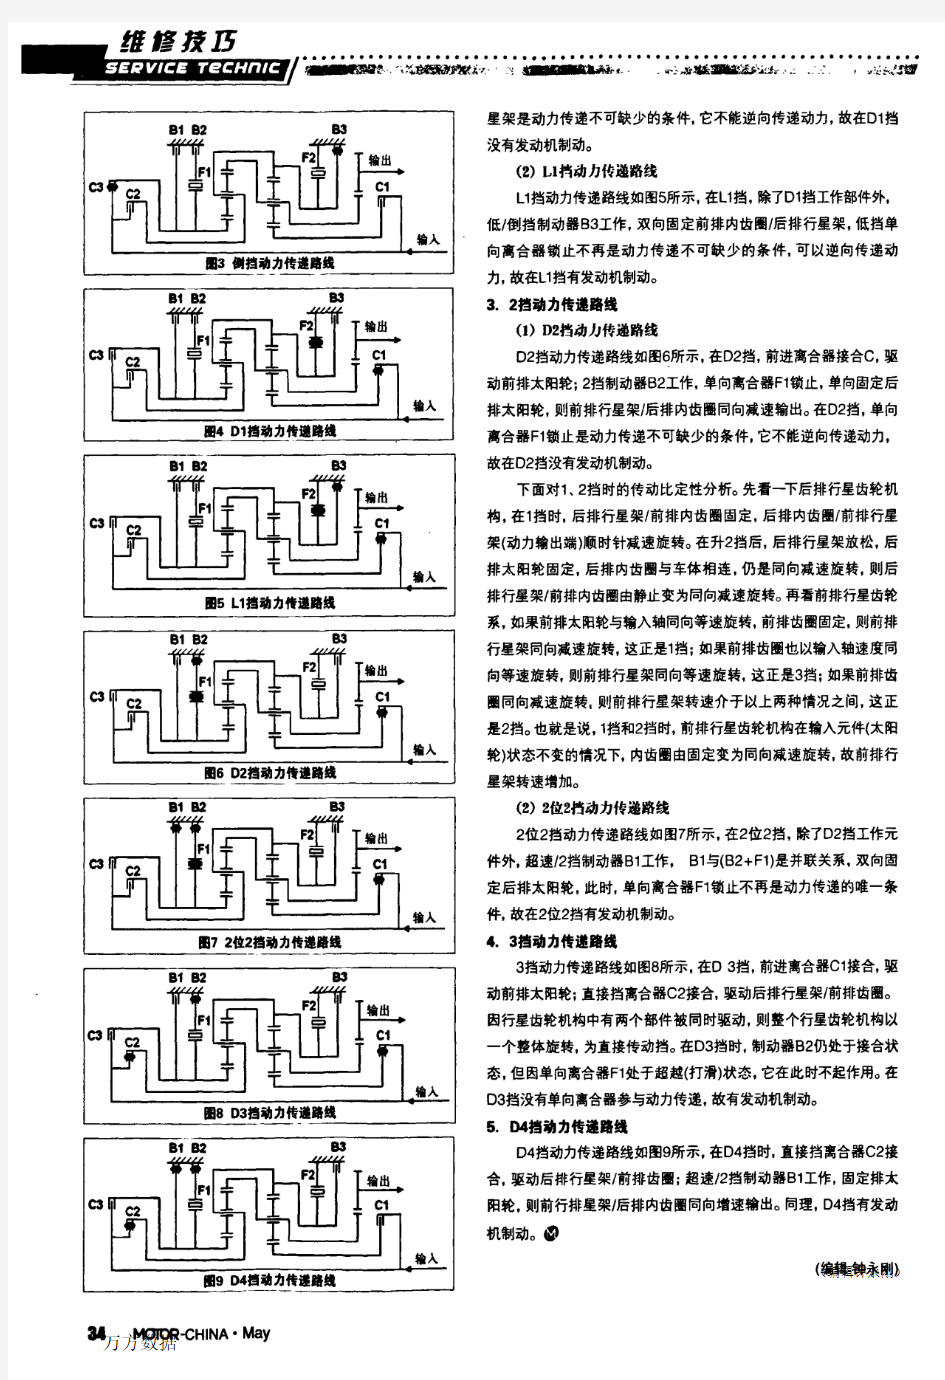 自动变速器动力传递路线分析(二十八)——广汽丰田雅利士U340E自动变速器动力传递路线